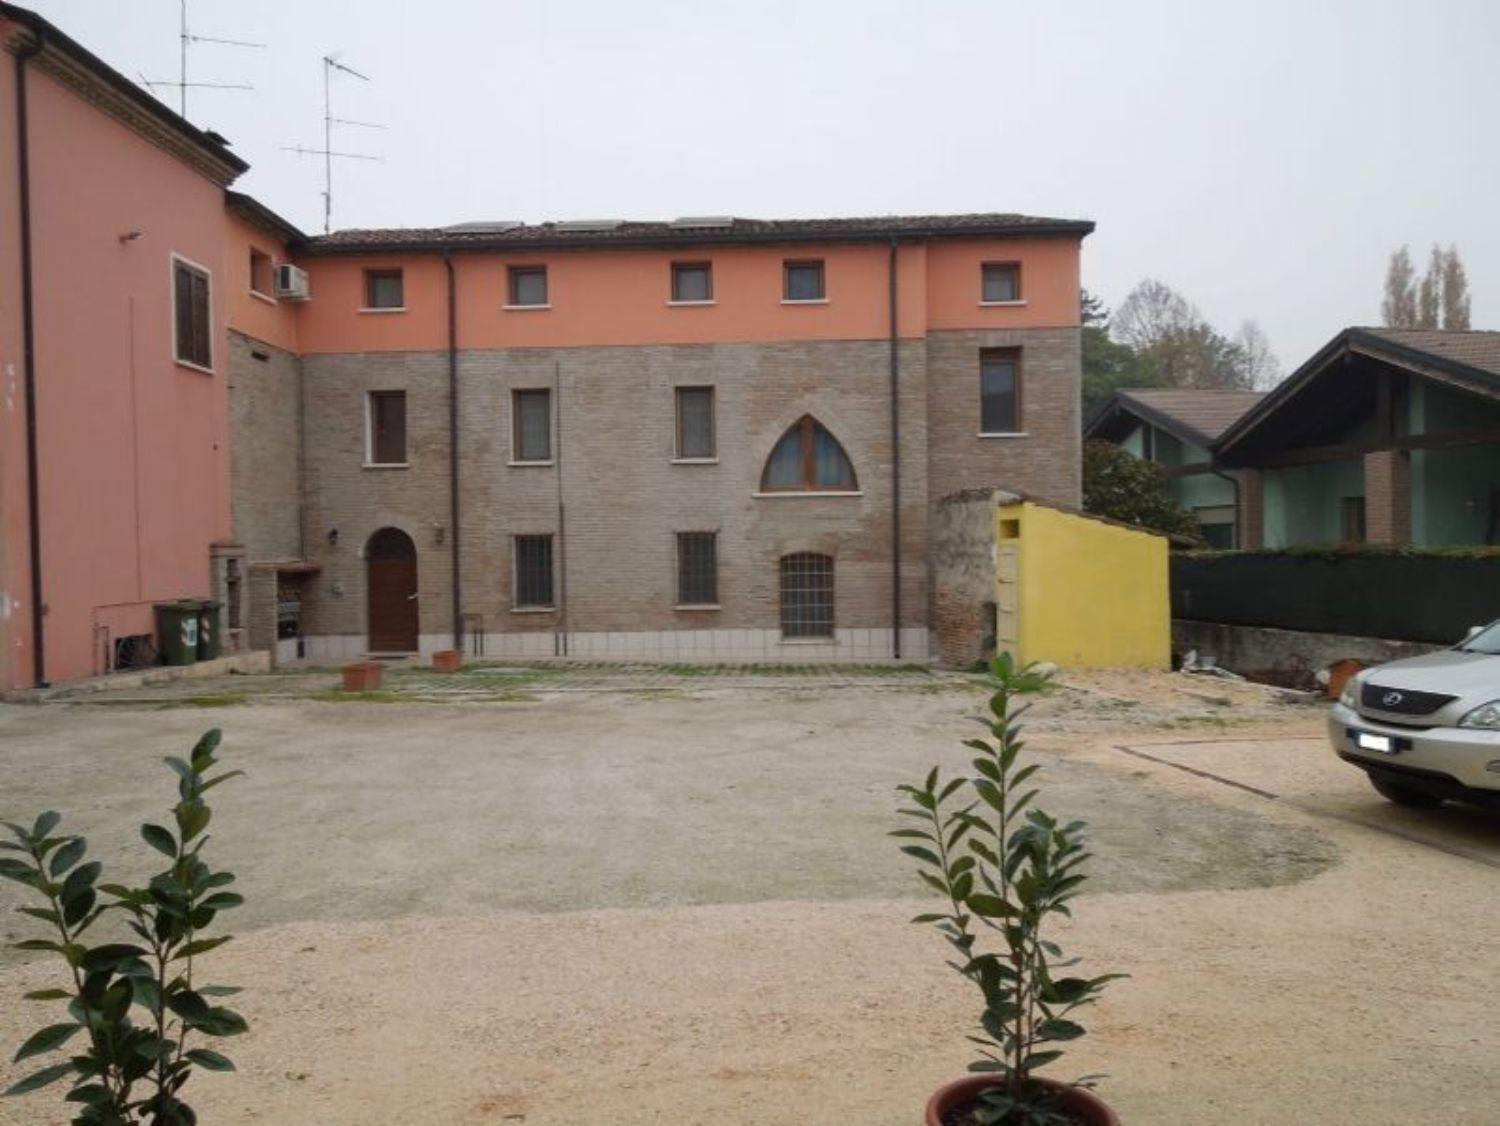 Appartamento in vendita a Borgo Virgilio, 3 locali, prezzo € 45.000 | CambioCasa.it